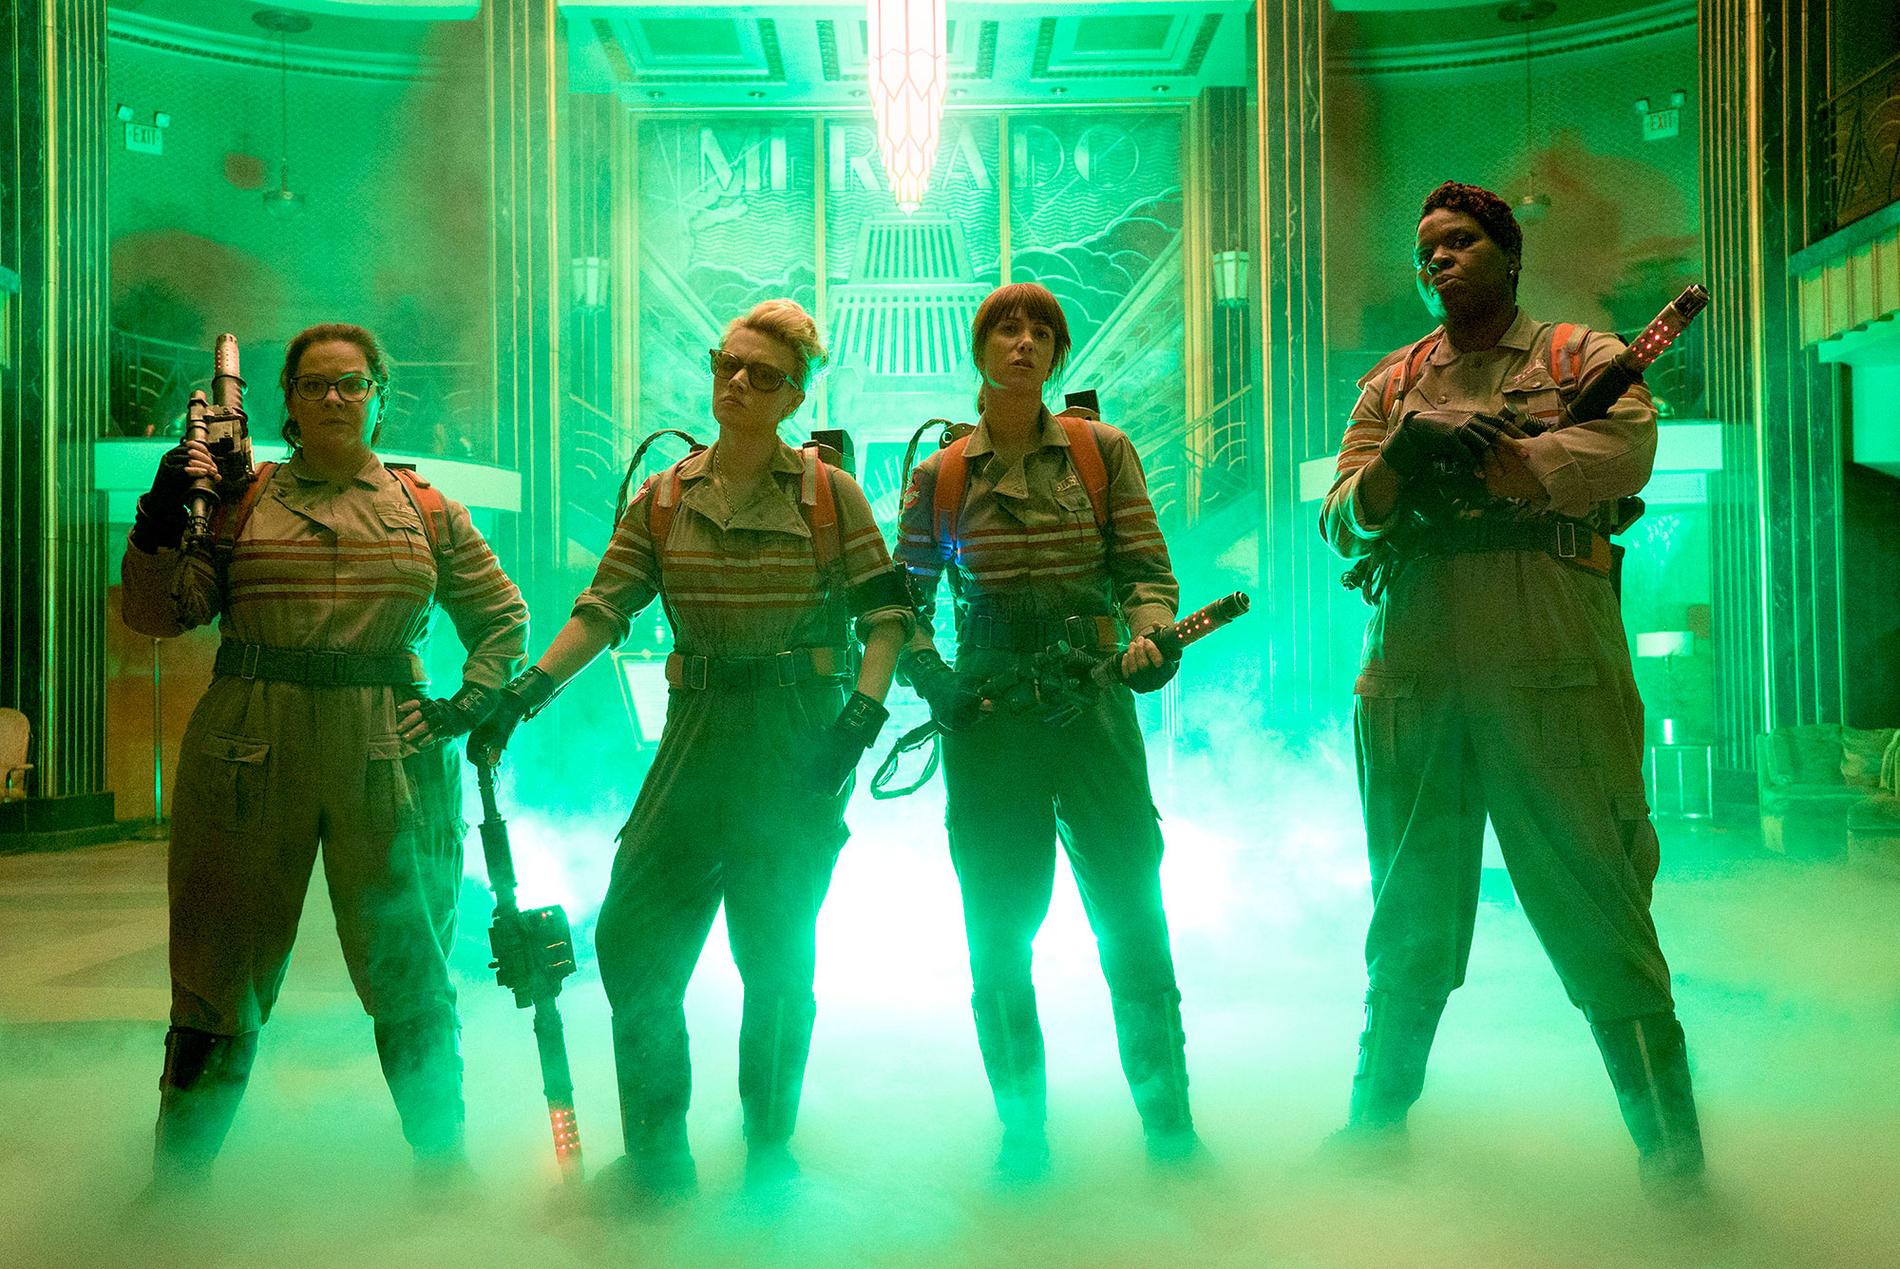 Scen ur ”Ghostbusters” med (från vänster) Melissa McCarthy, Kate McKinnon, Kristen Wiig och Leslie Jones.